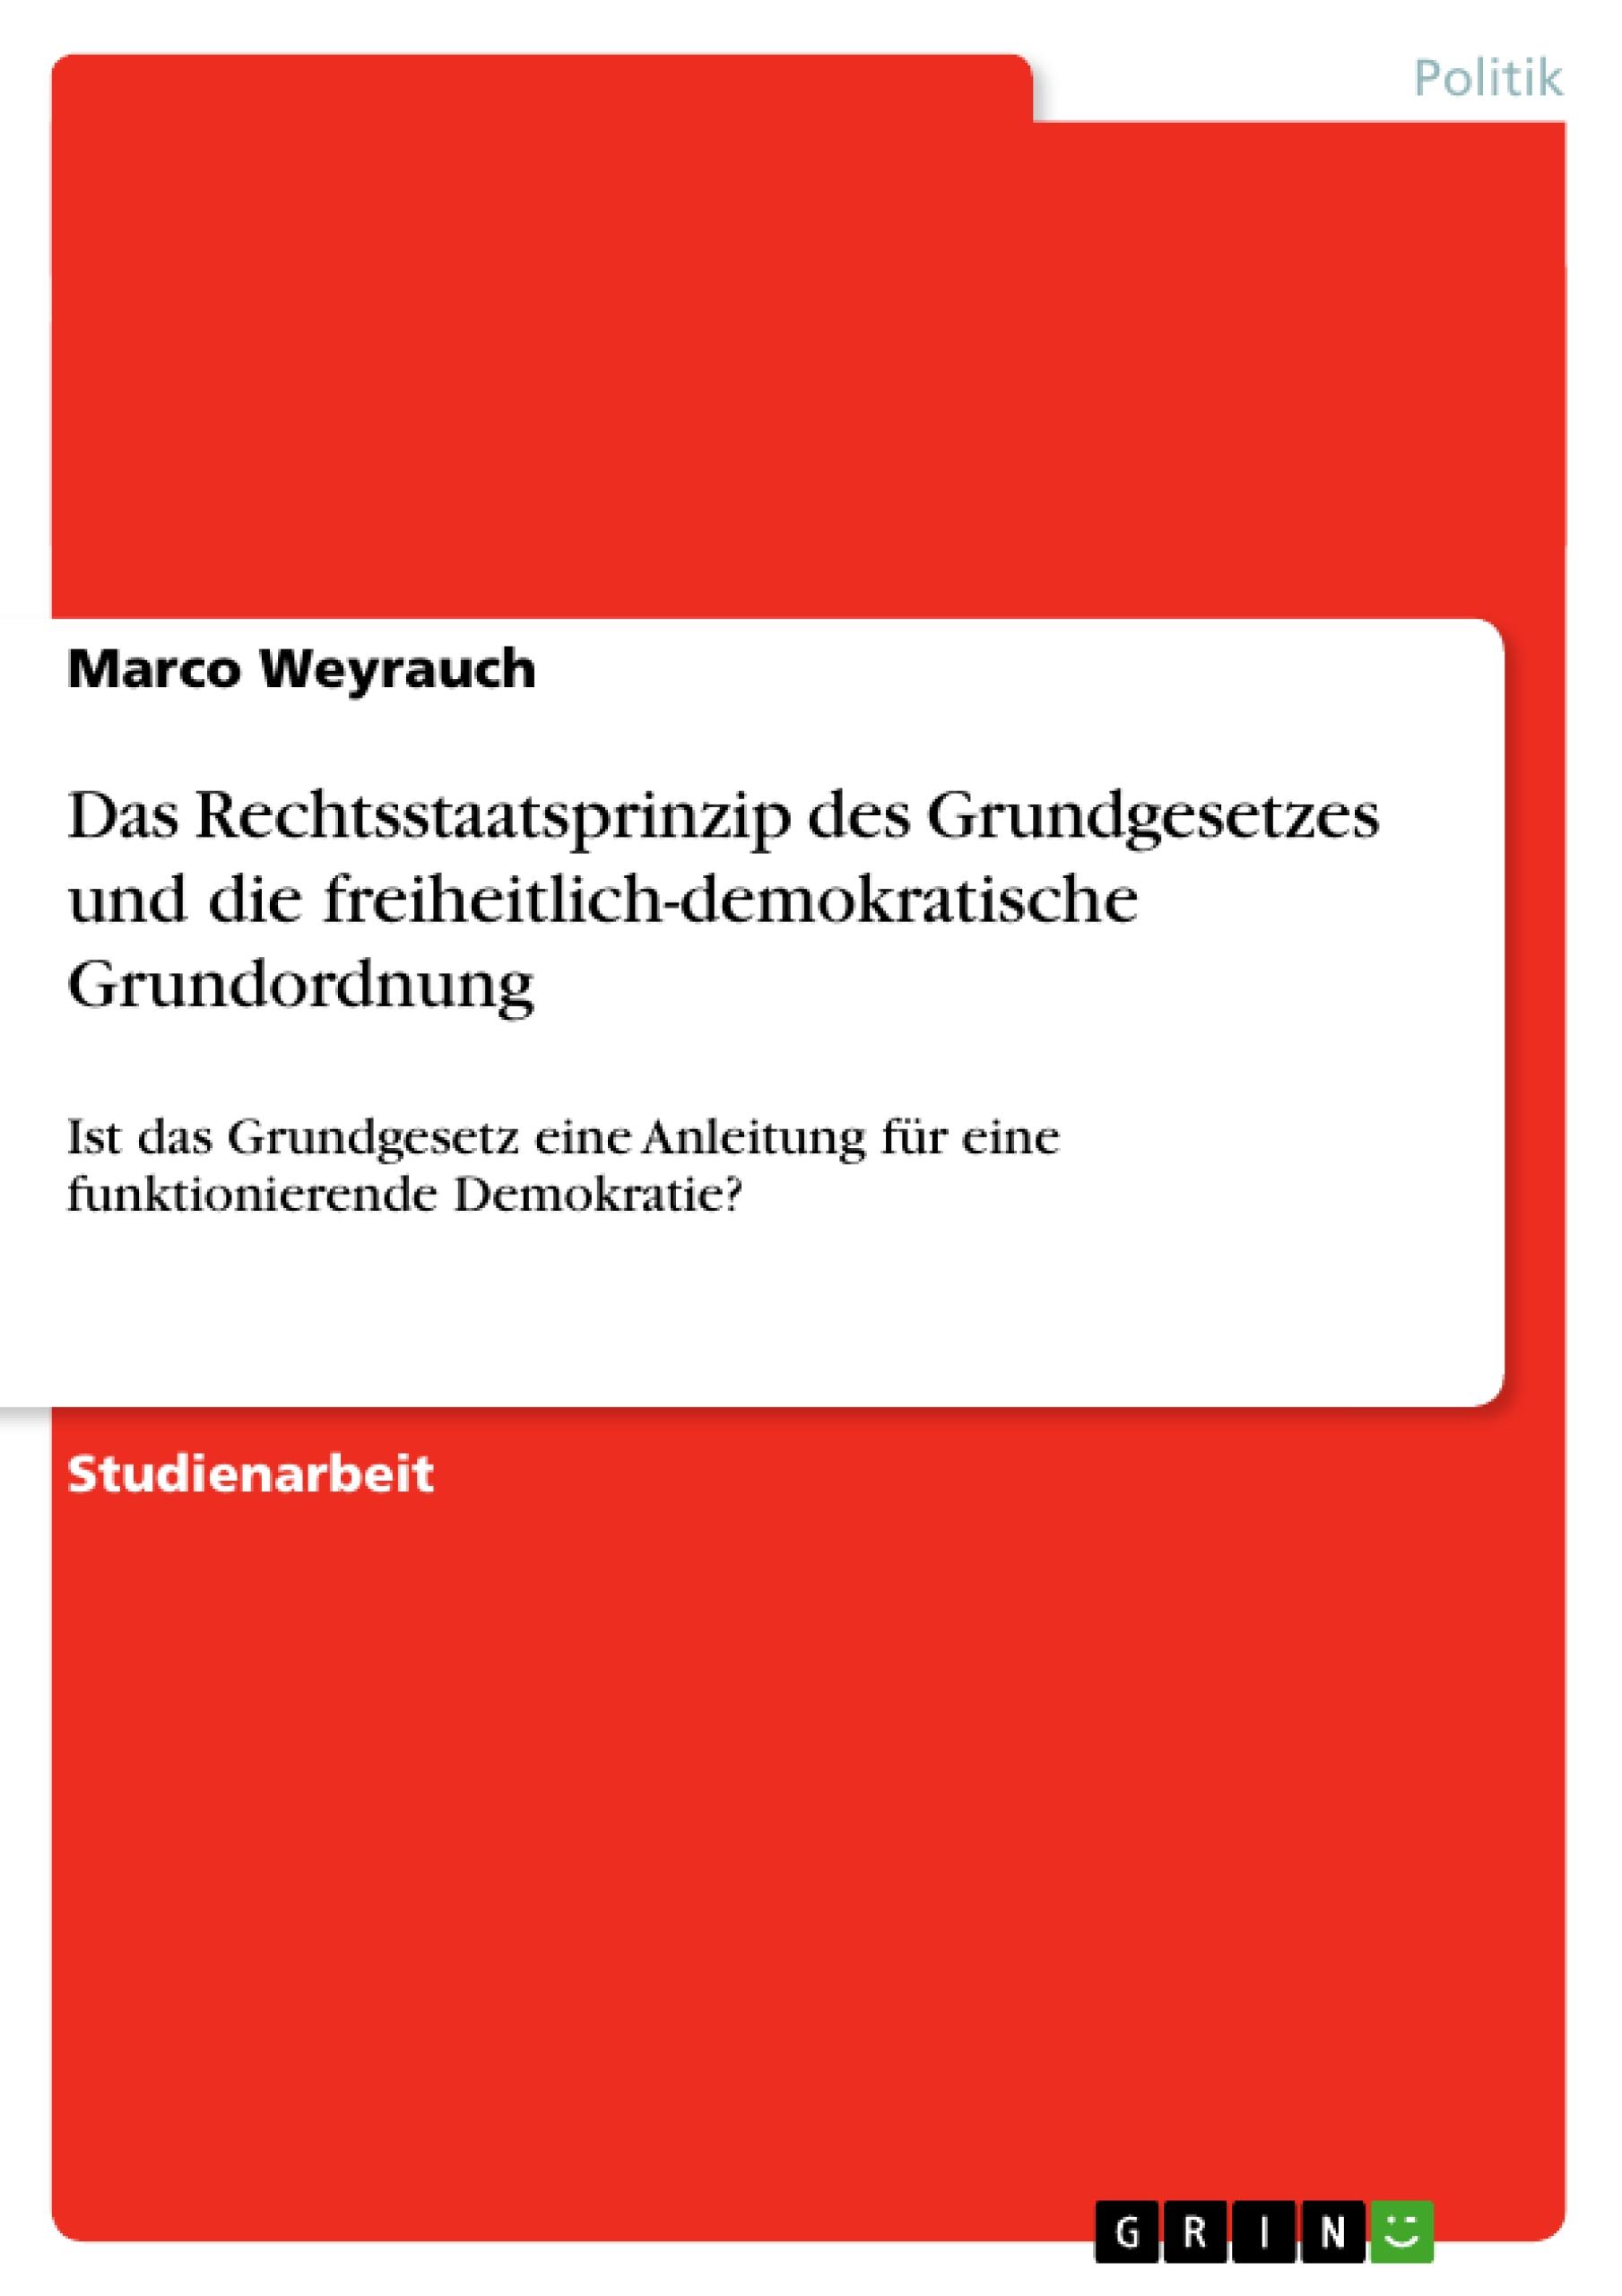 Das Rechtsstaatsprinzip des Grundgesetzes und die freiheitlich-demokratische Grundordnung - Weyrauch, Marco